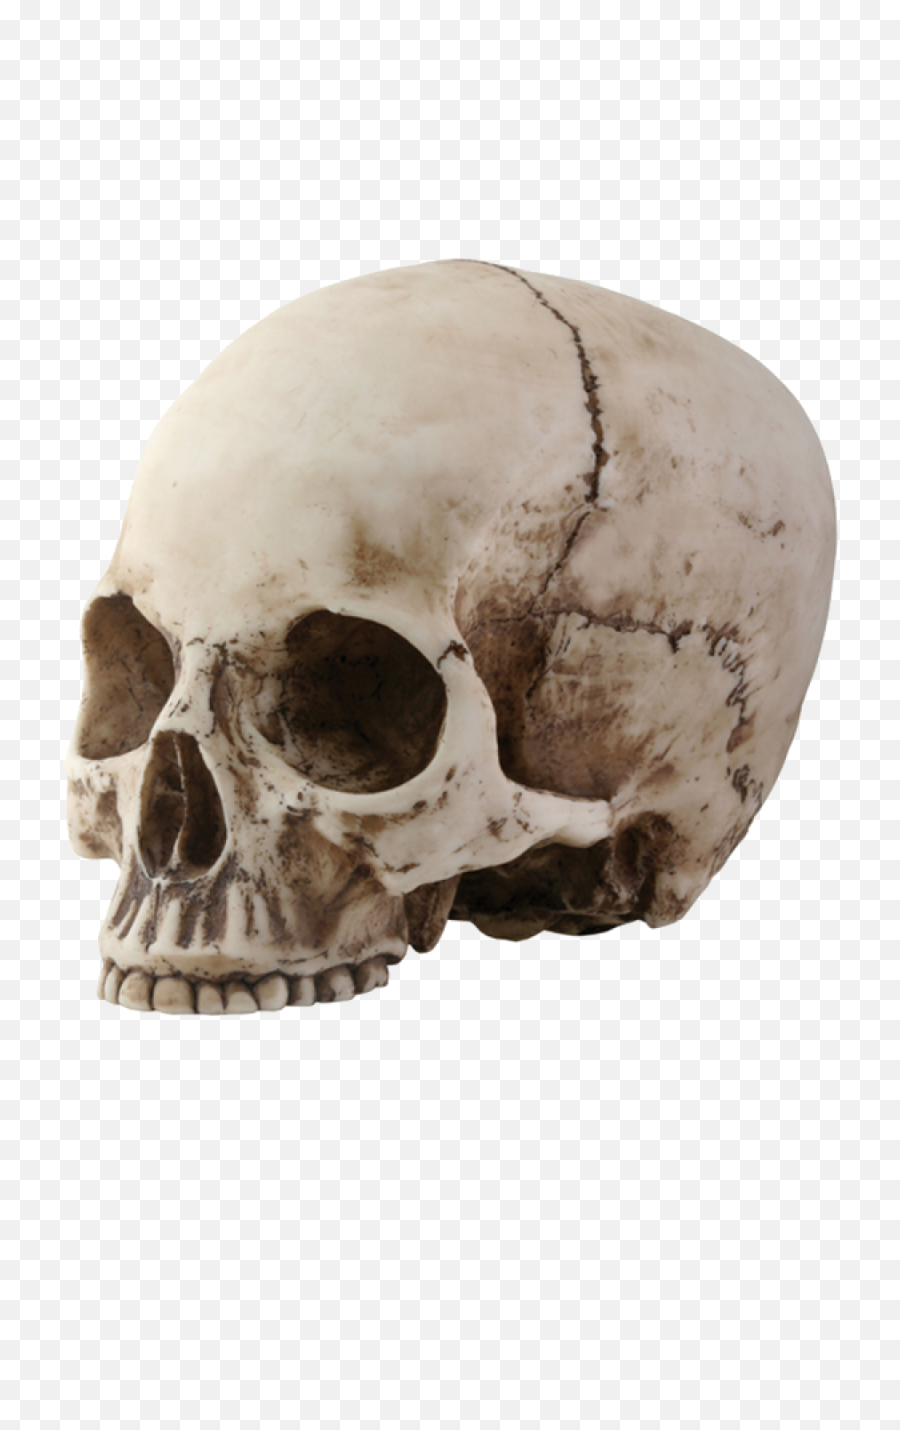 Skull Png Image - Skull Head Transparent Background,Skeleton Png Transparent